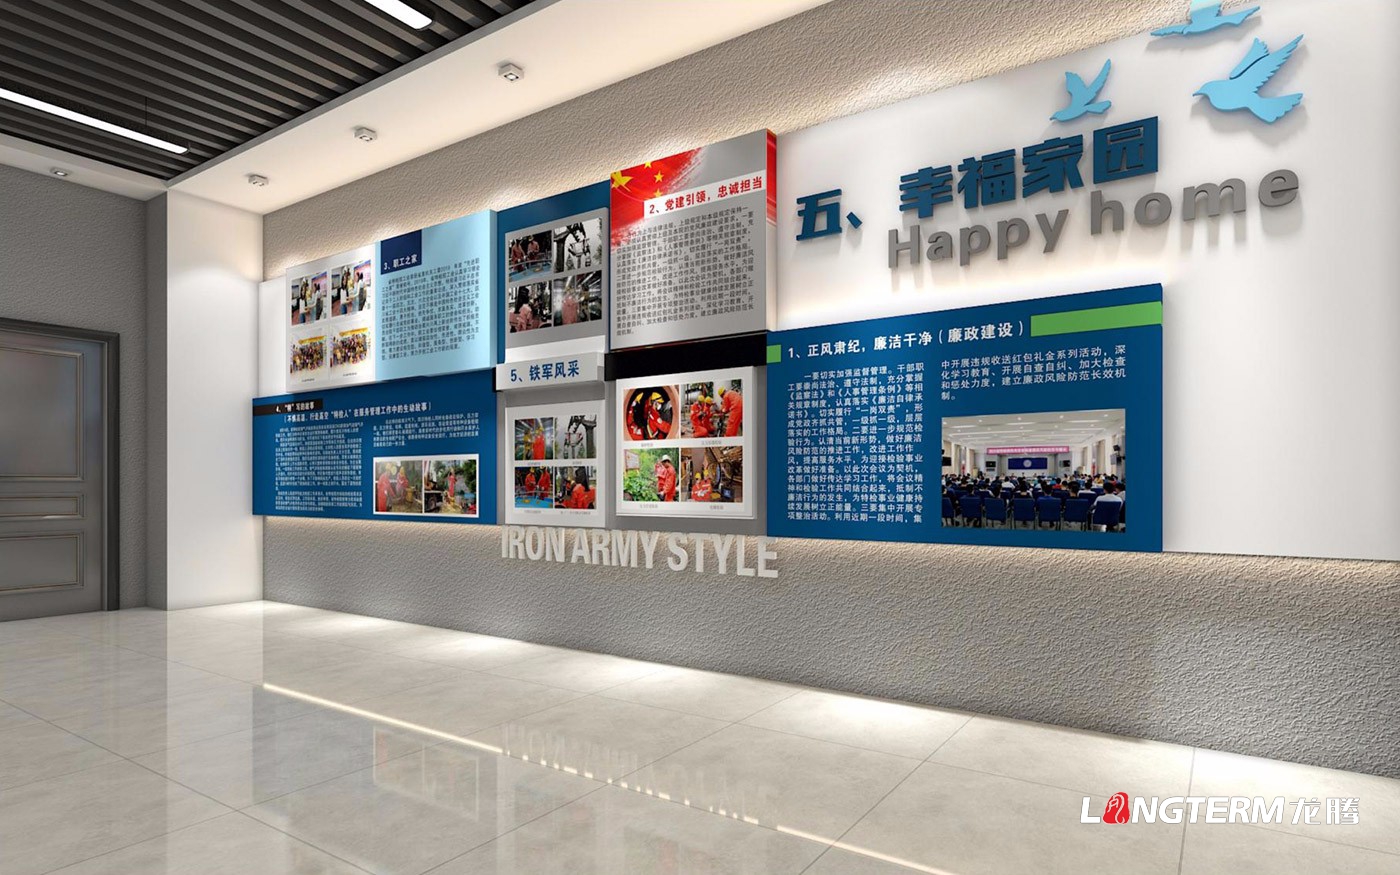 四川省特种装备磨练研究院科技效果展览室、特种装备科普展示厅、临展区策划及文化墙建设设计